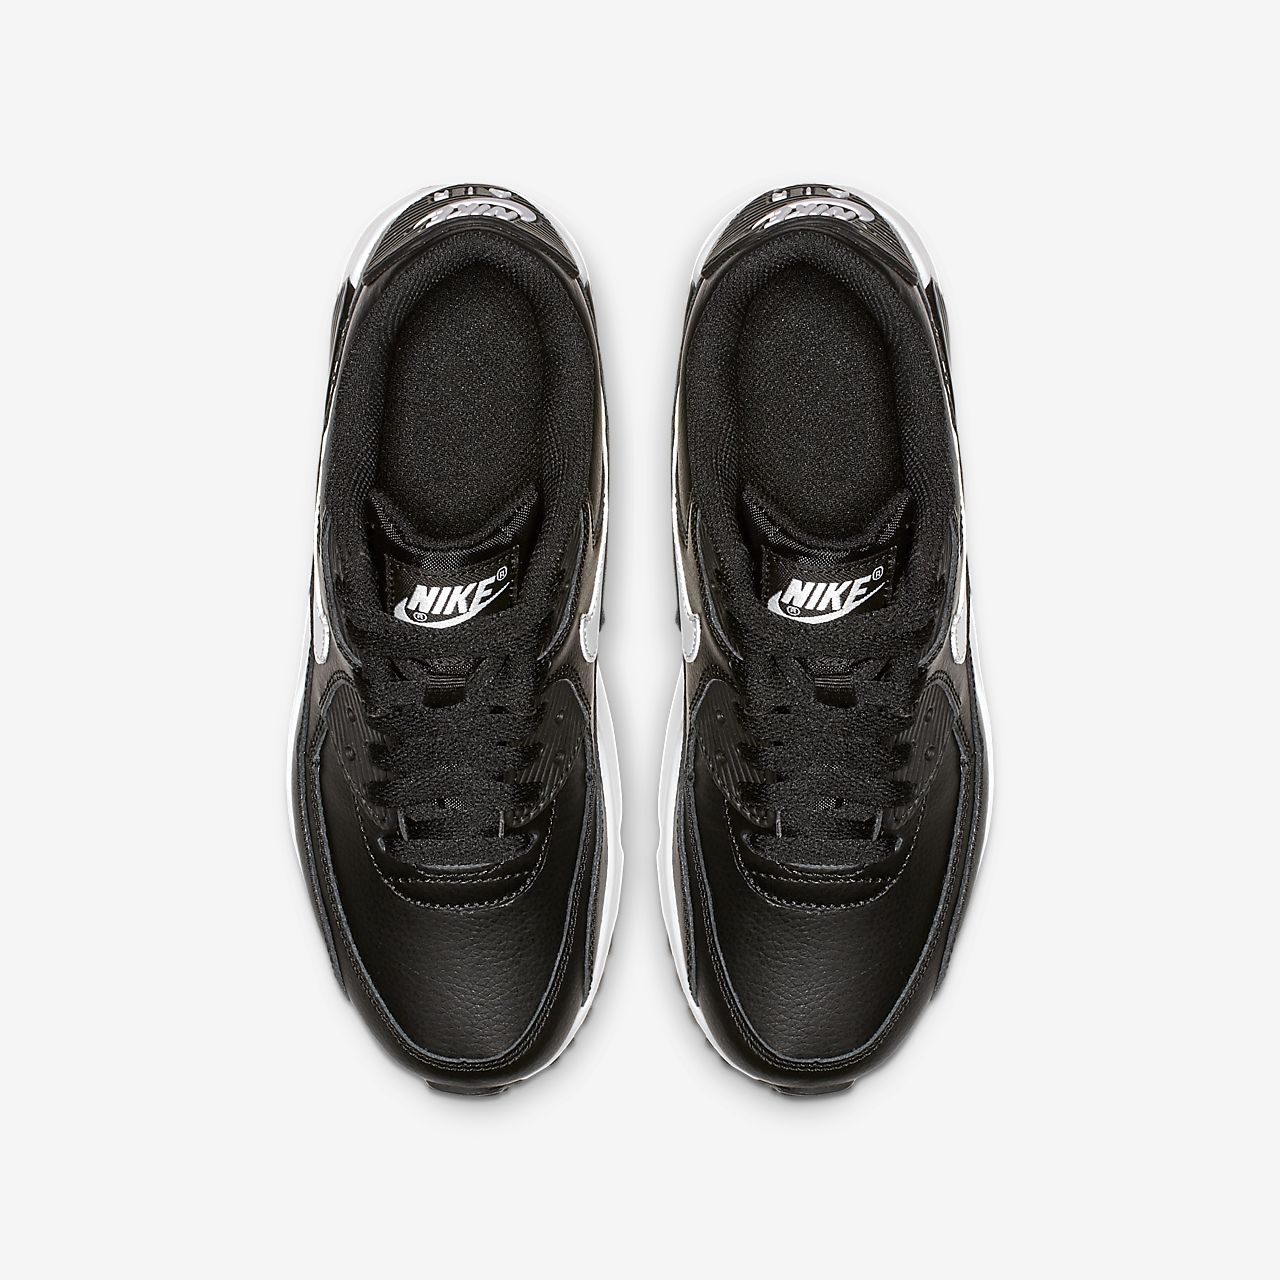 Nike Air Max 90 Leather - Sneakers - Sort/MørkeGrå/Hvide | DK-74331